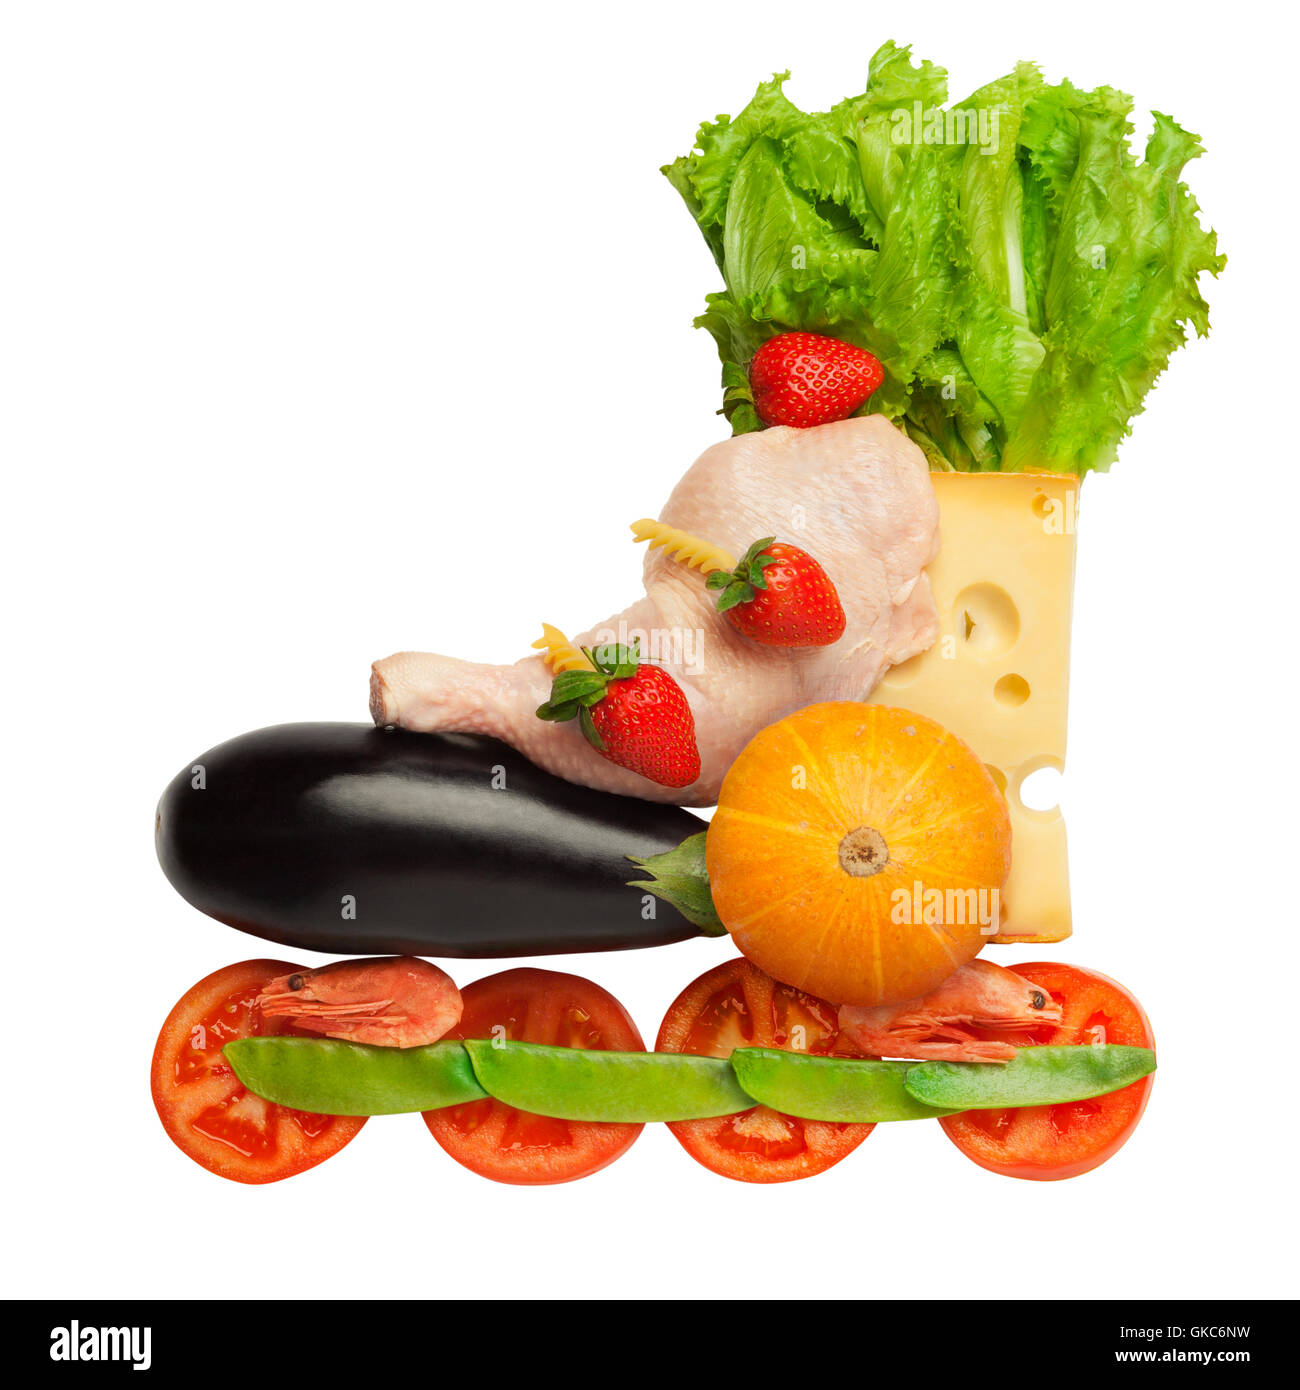 Gesunde Ernährung in einem gesunden Körper: Fitness als einen Lebensstil. Stockfoto